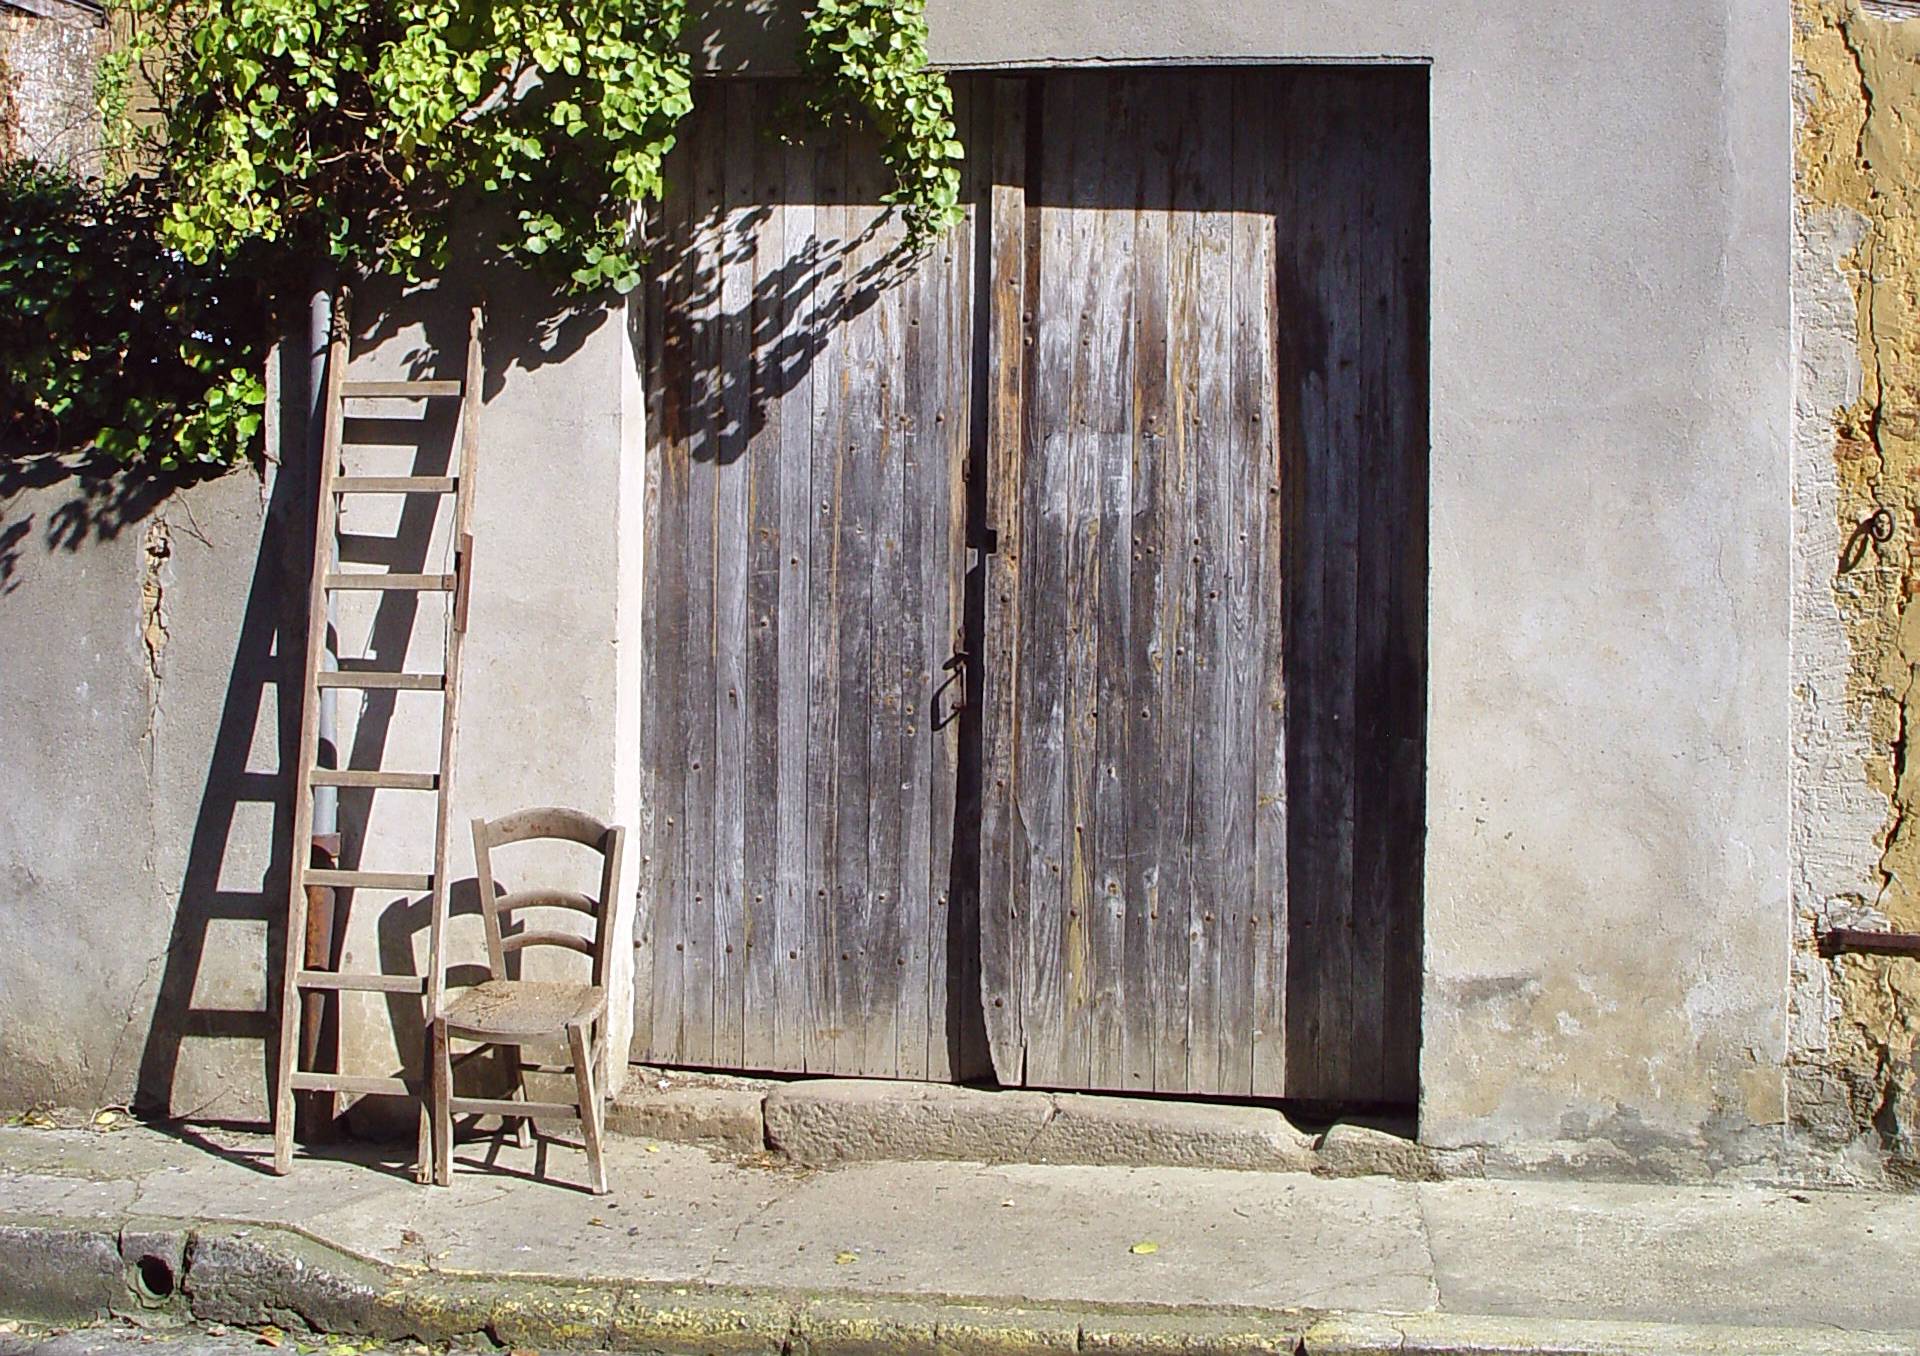 Vieille chaise vide en bois devant une vieille porte de grange